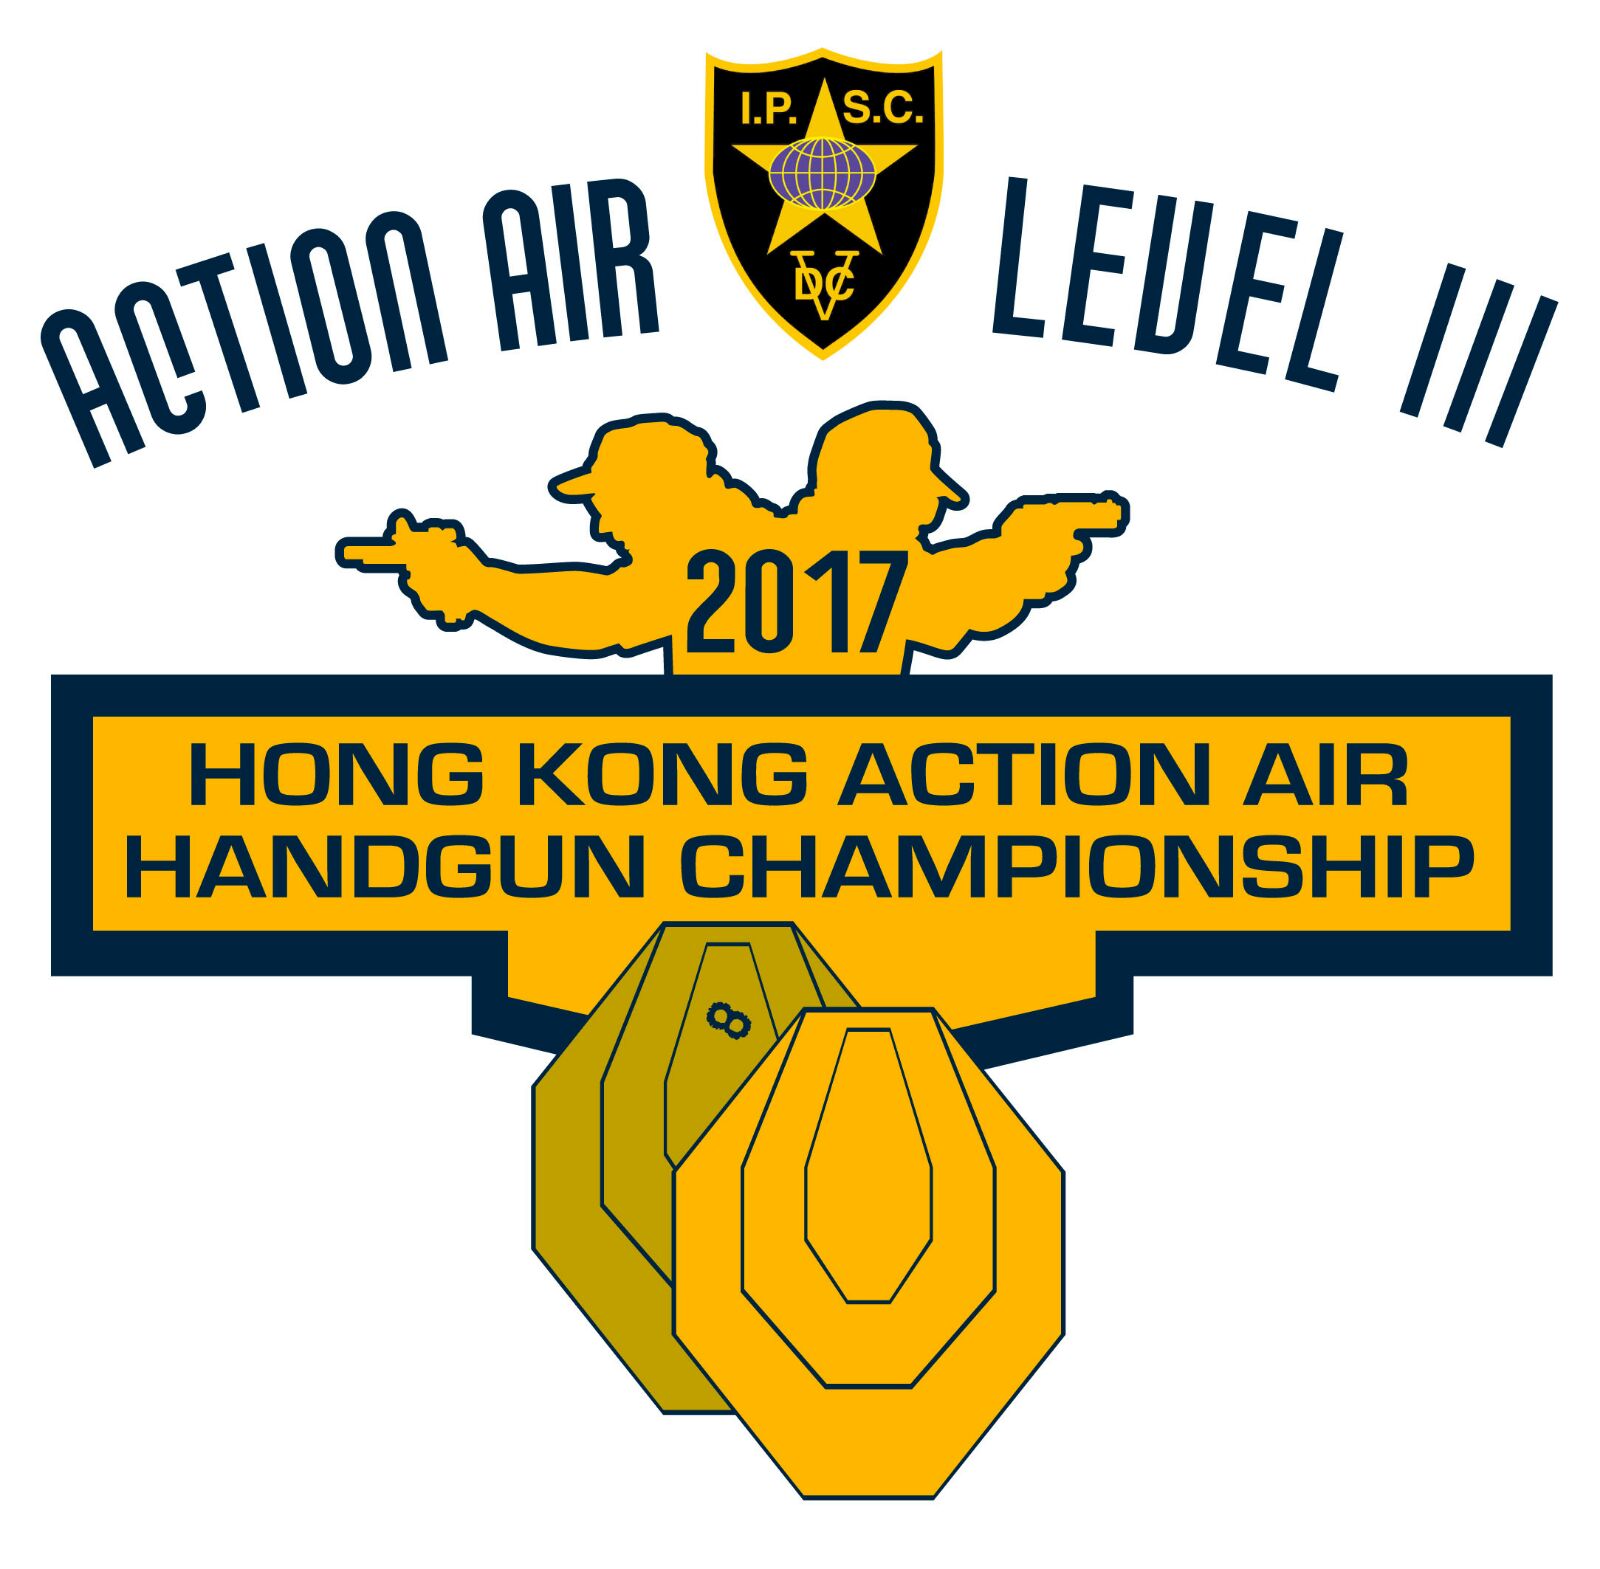 Hong Kong Action Air Handgun Championship 2017